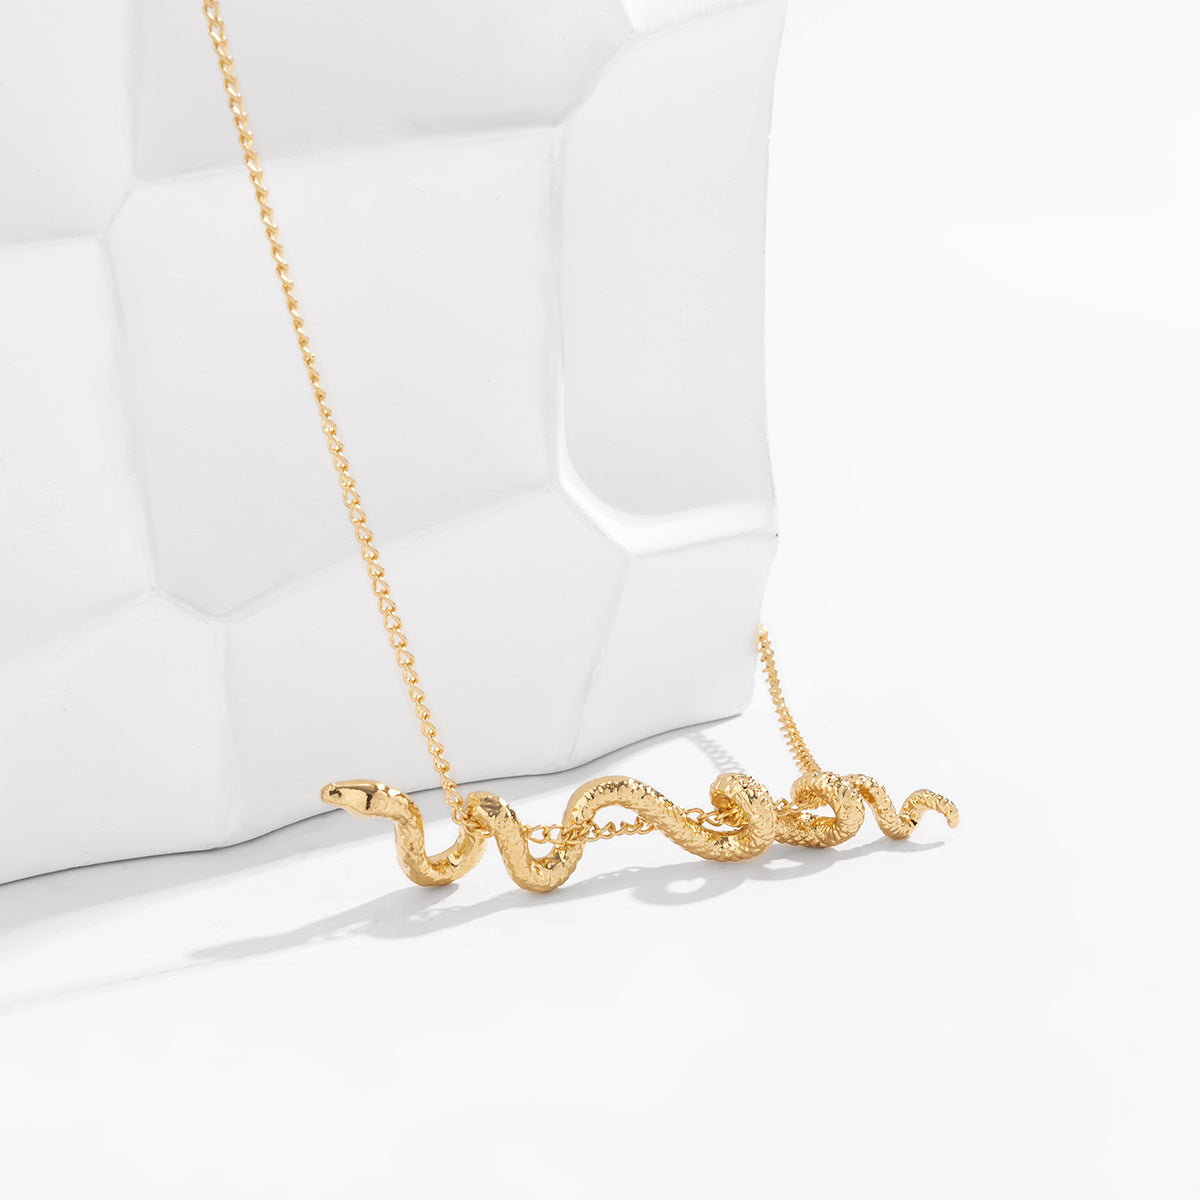 Snake Pendant Necklace for Women Gift